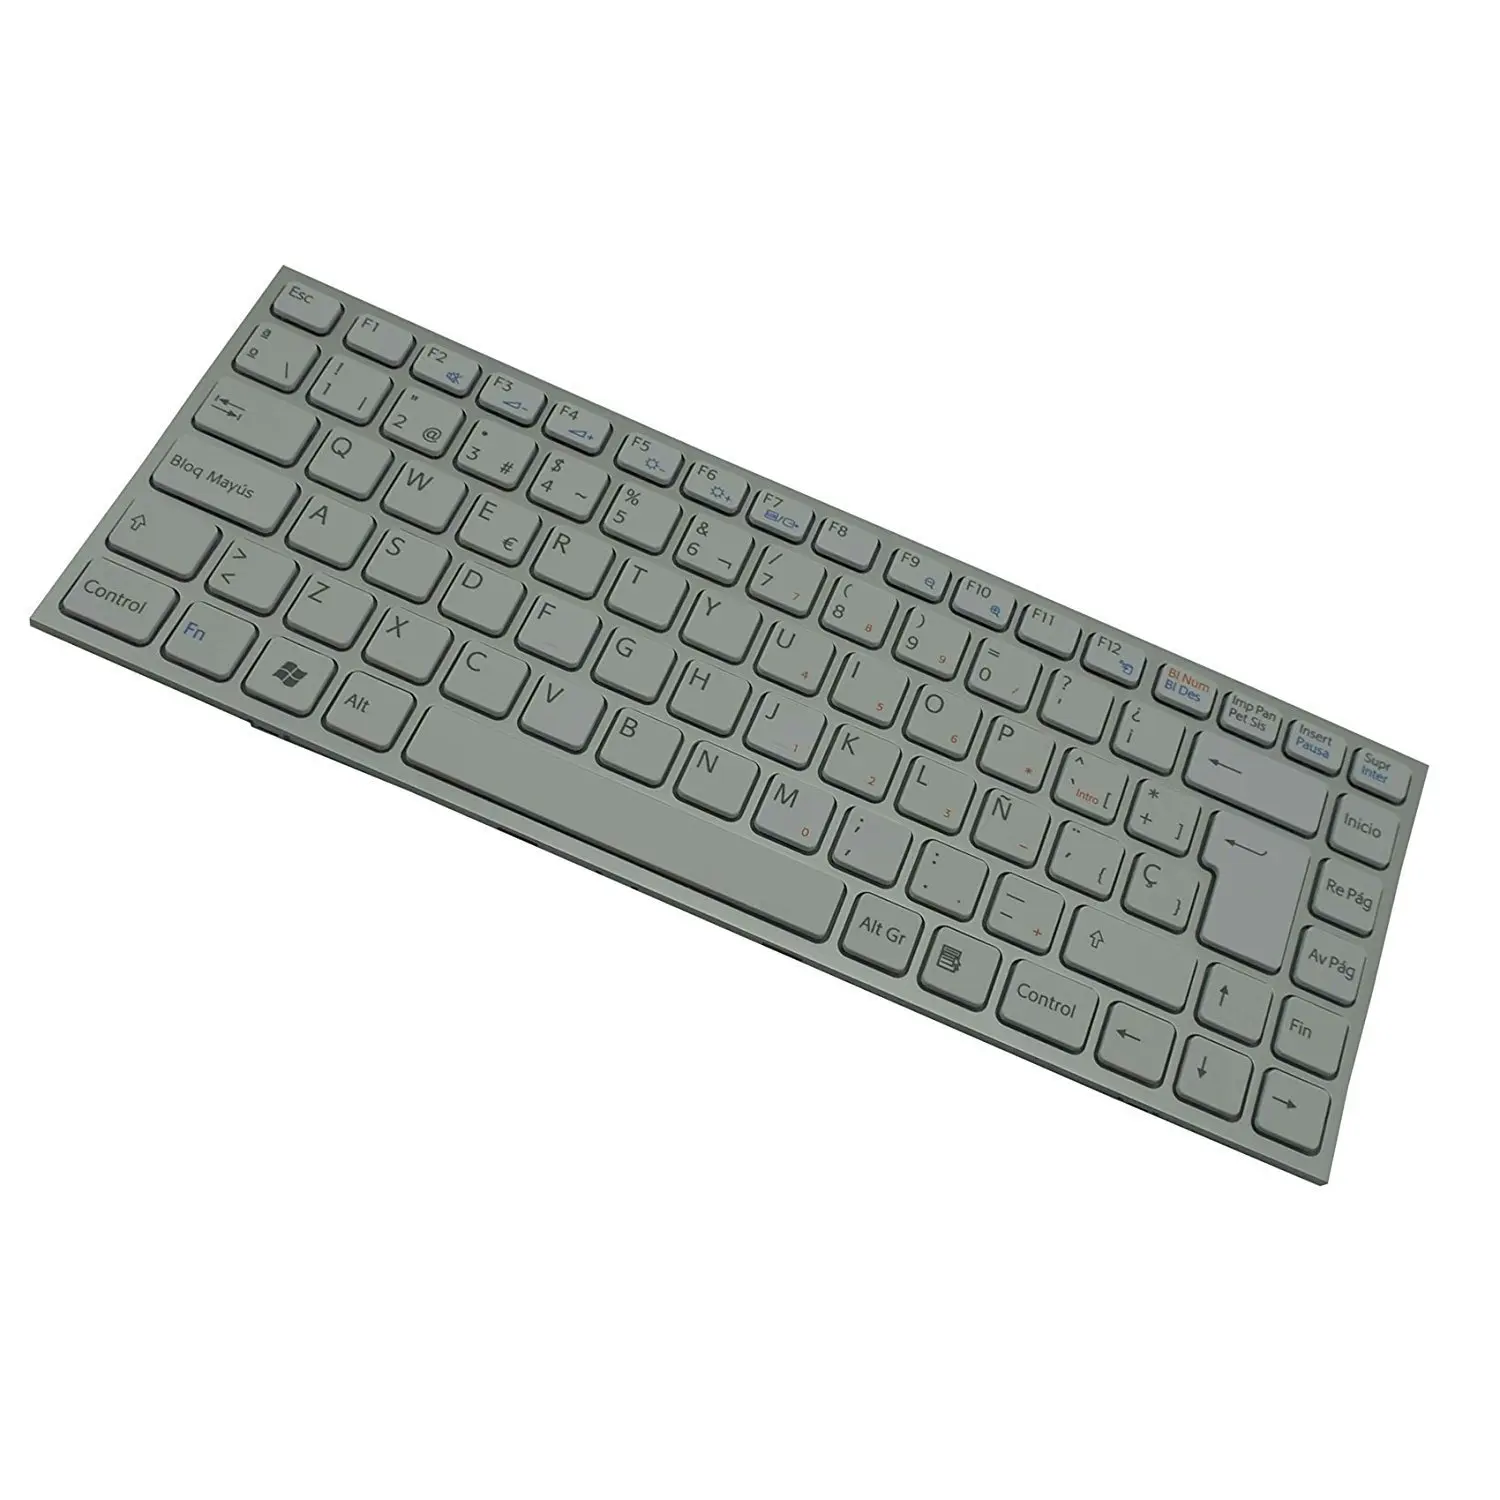 vsco keys keyboard layout